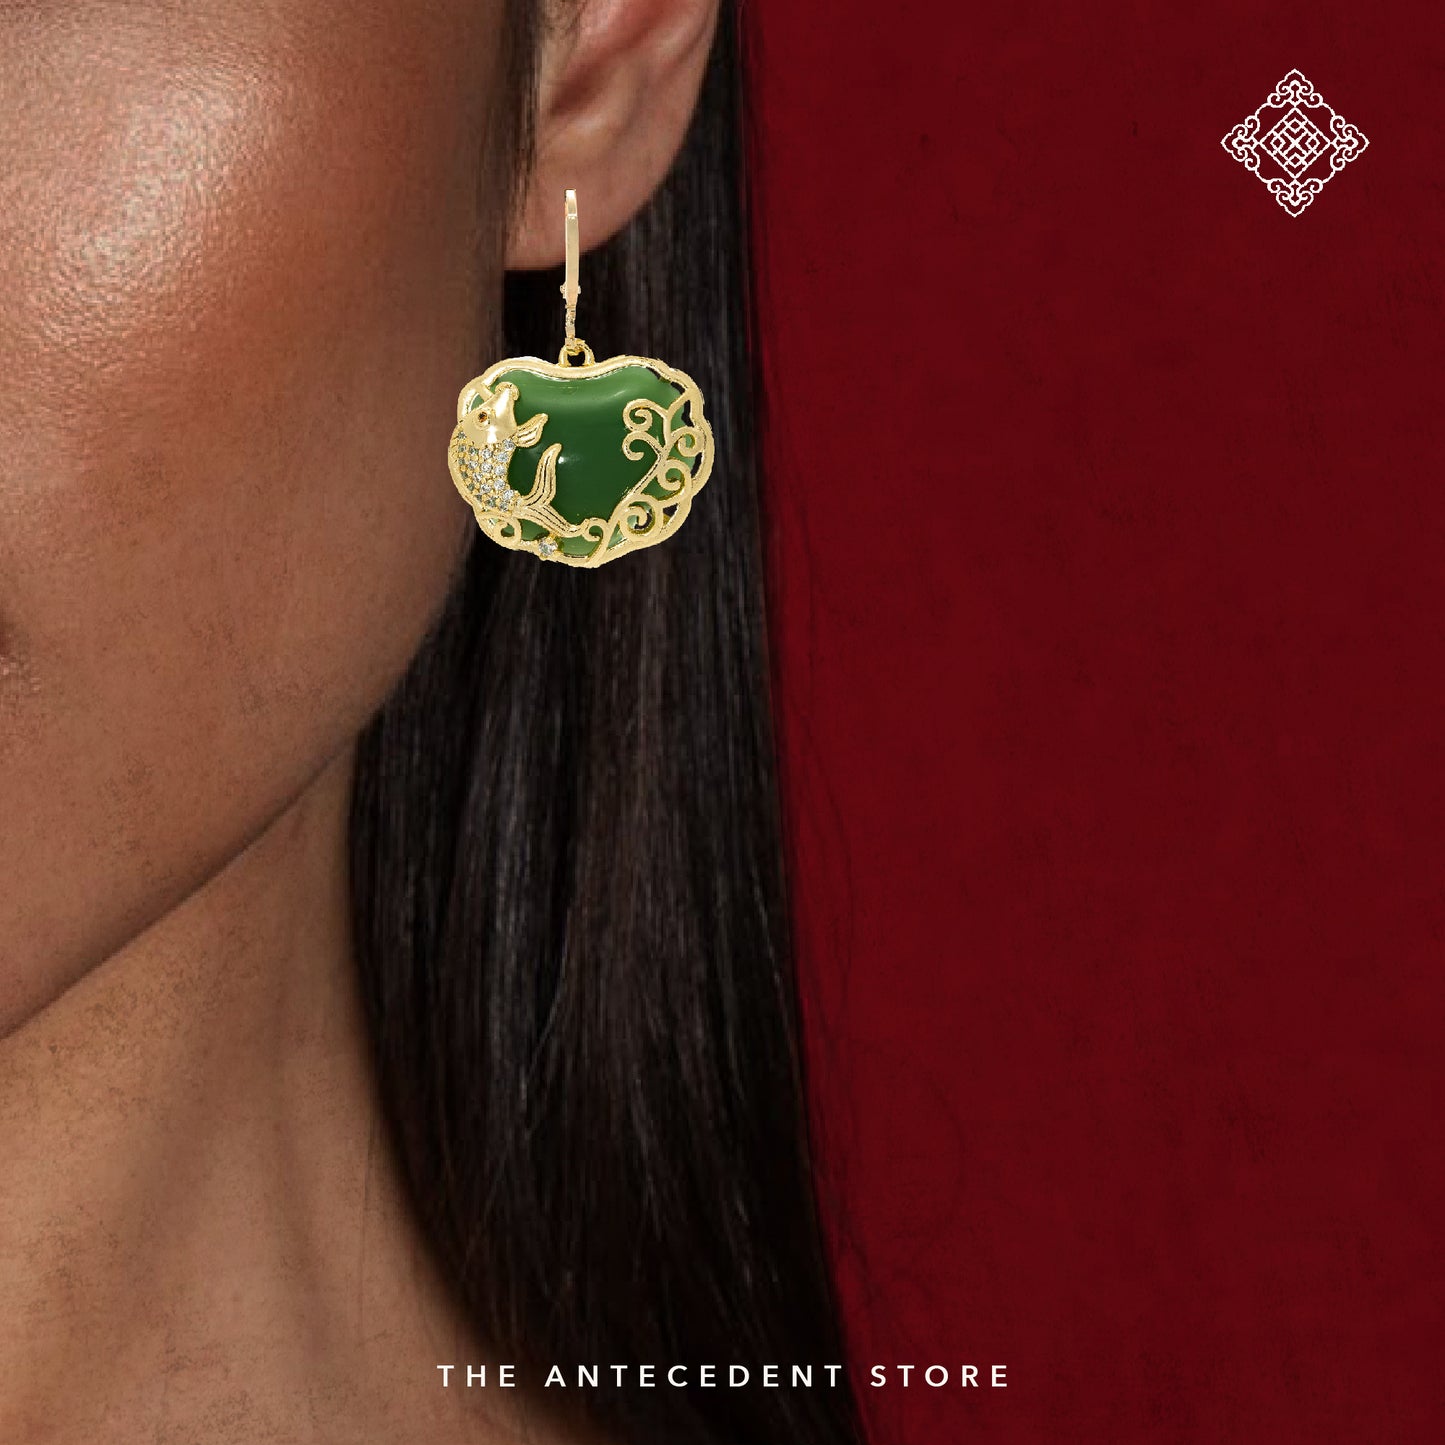 【如意锁】Longevity Lock Earrings - 14K Real Gold Plated Jewelry